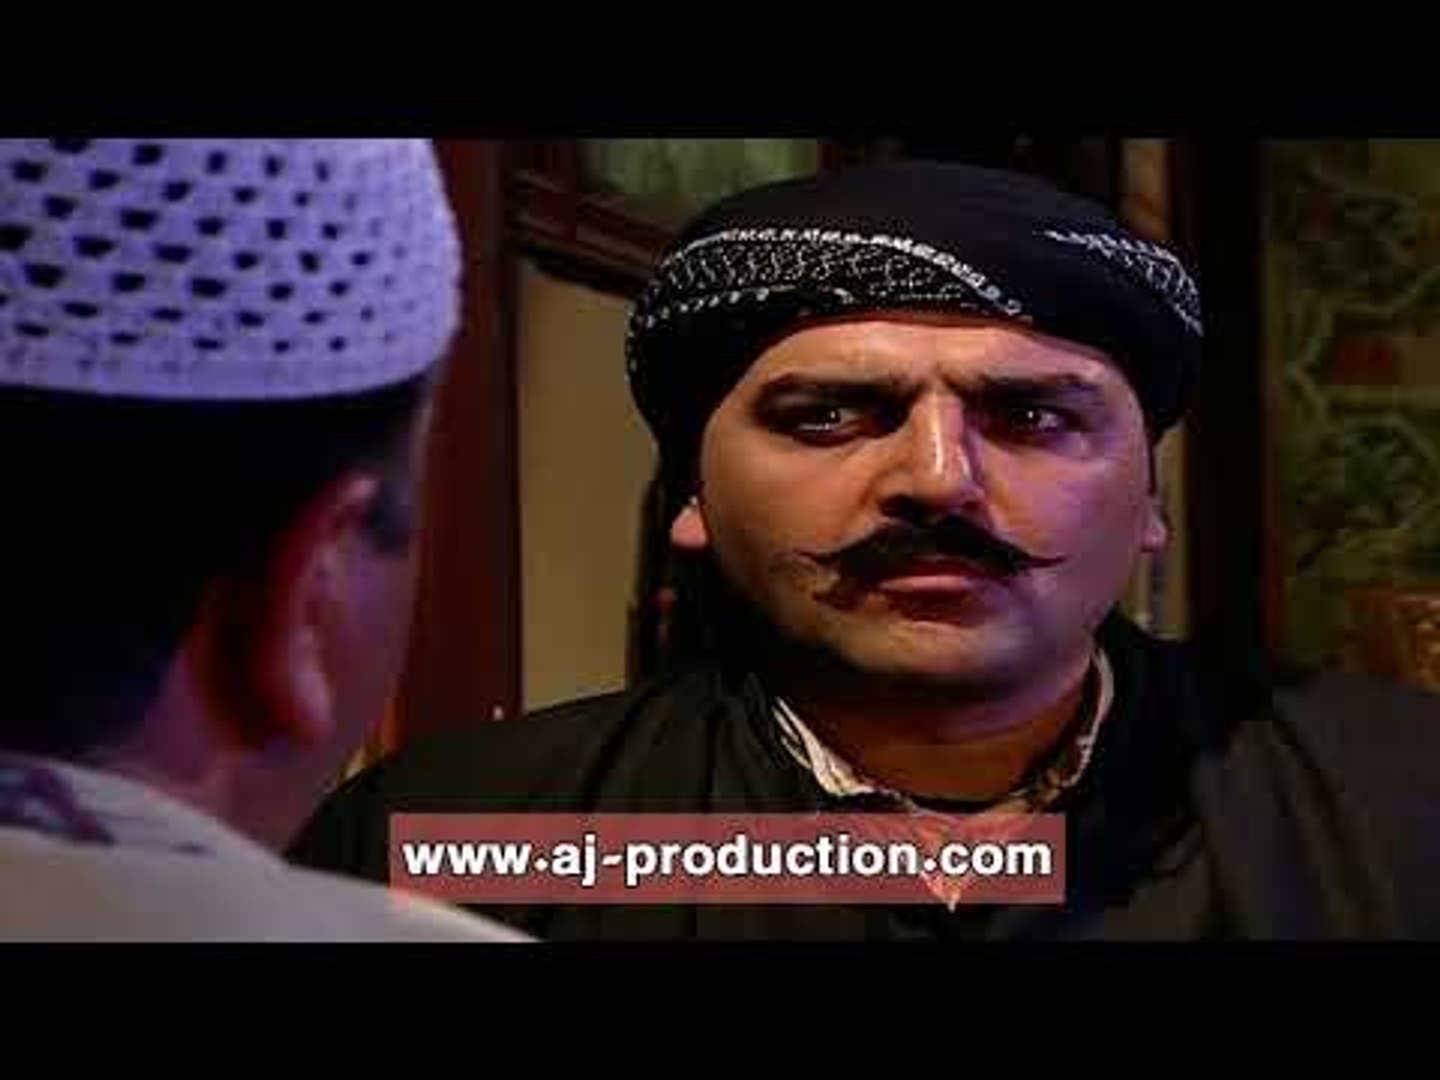 قنصلية حوالة مالية التسلسل الهرمي باب الحارة هوشات ابو شهاب -  ninoscalisi.com